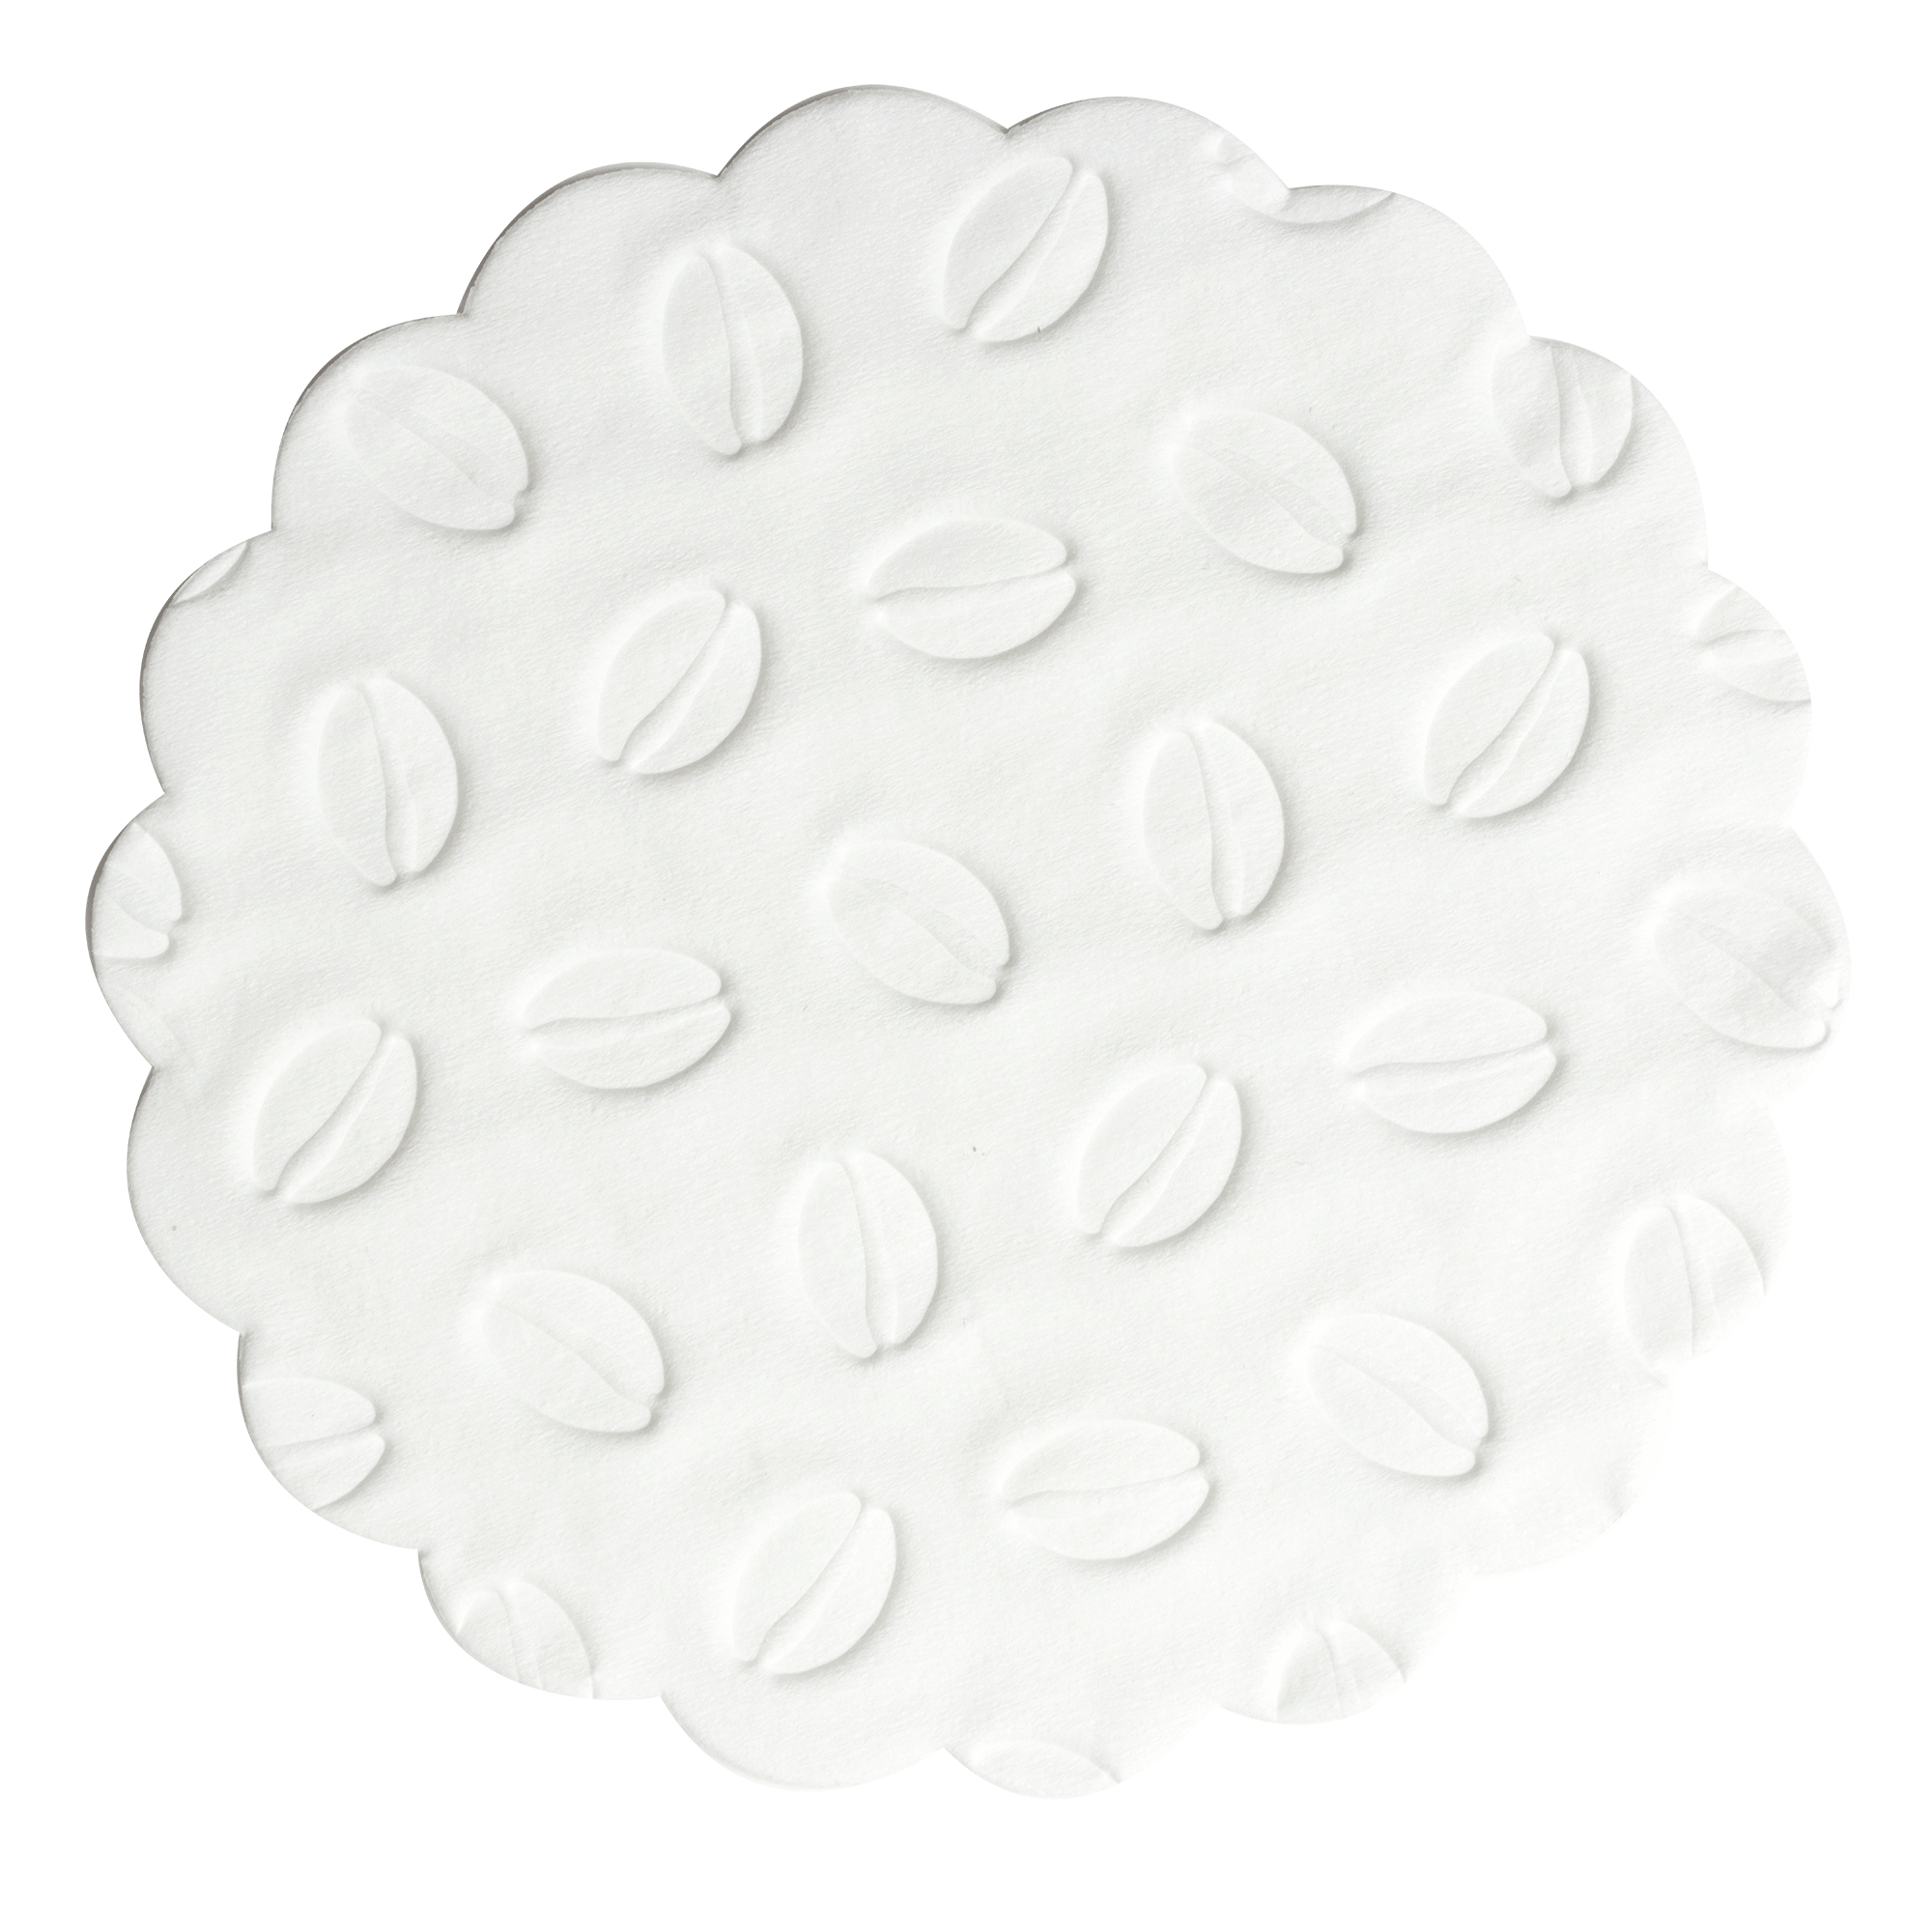 Tissue-Tassendeckchen Bohne weiß, ø 9 cm